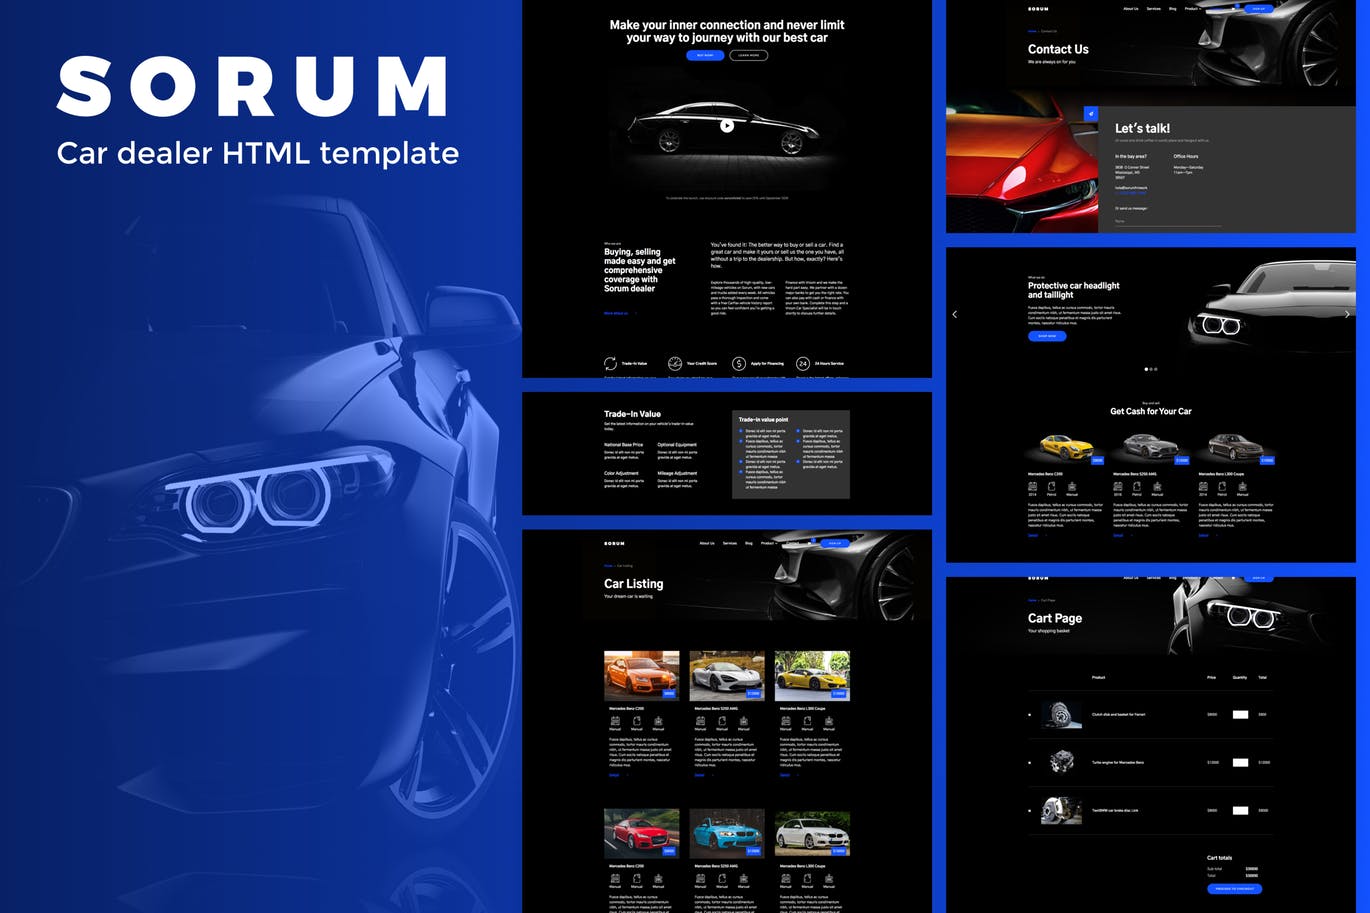 汽车4S经销商/汽车品牌官网HTML模板第一素材精选 Sorum – Car Dealer HTML Template插图